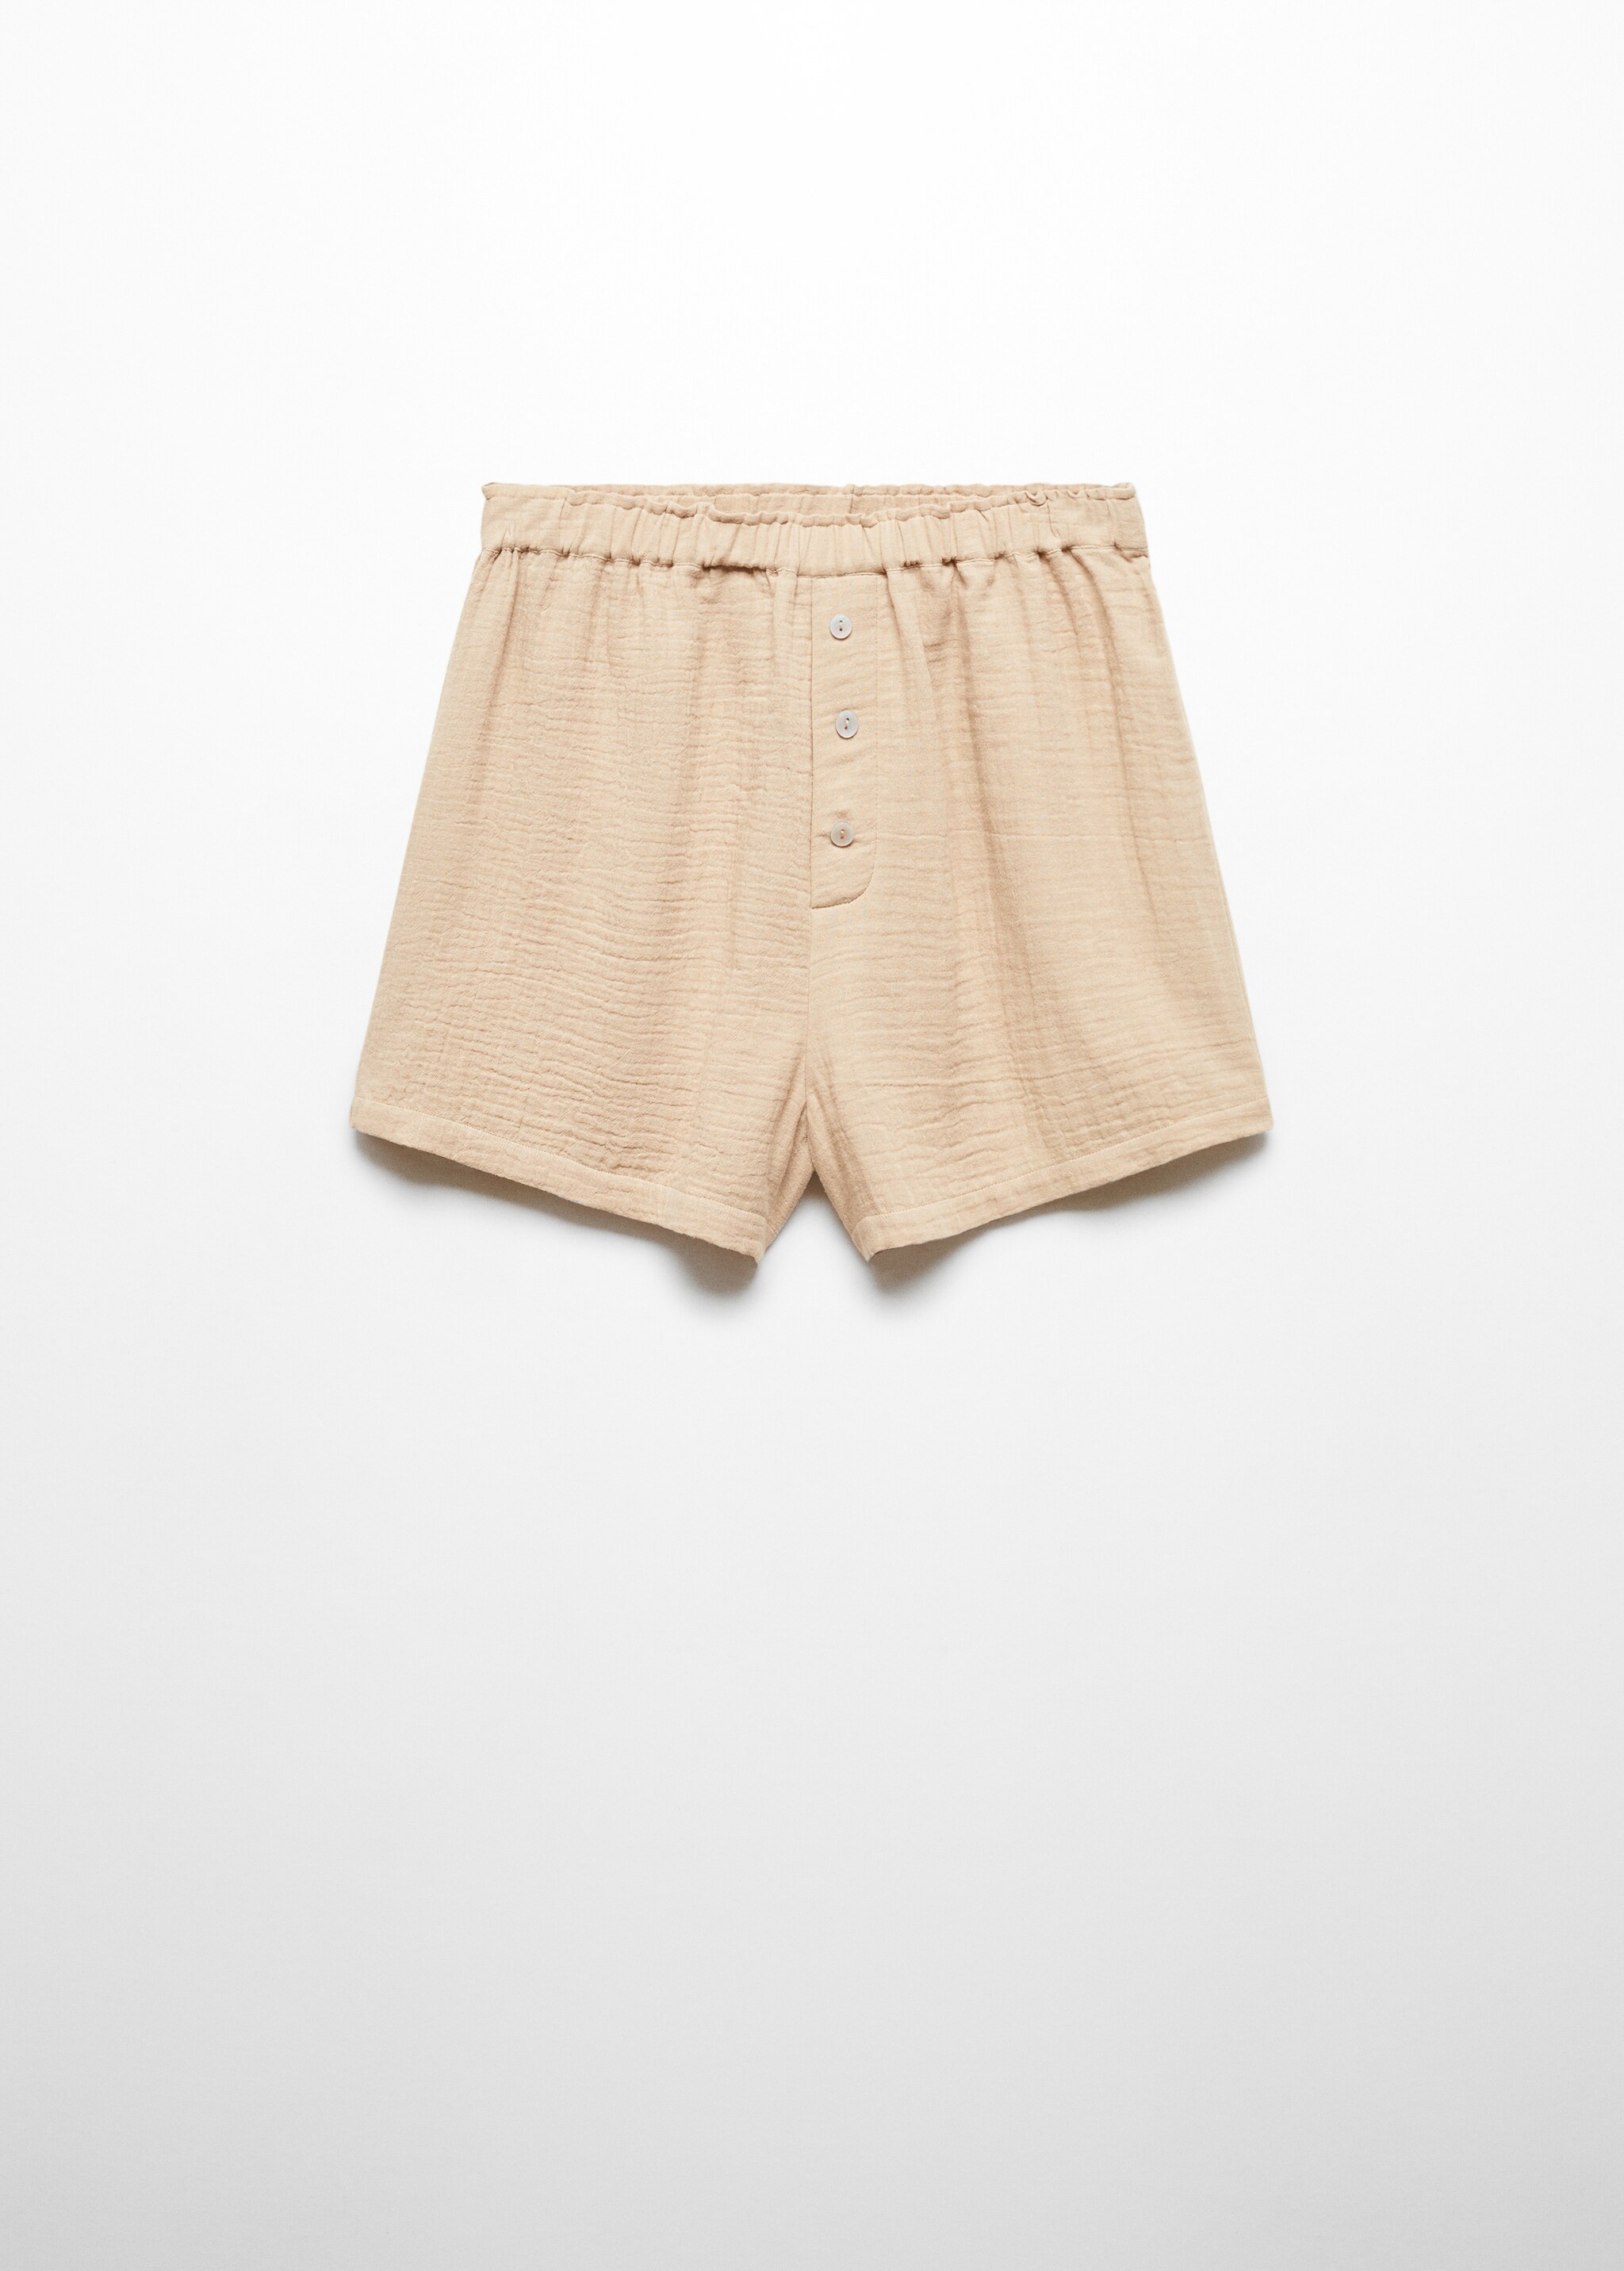 Shorts pijama gasa de algodón - Artículo sin modelo